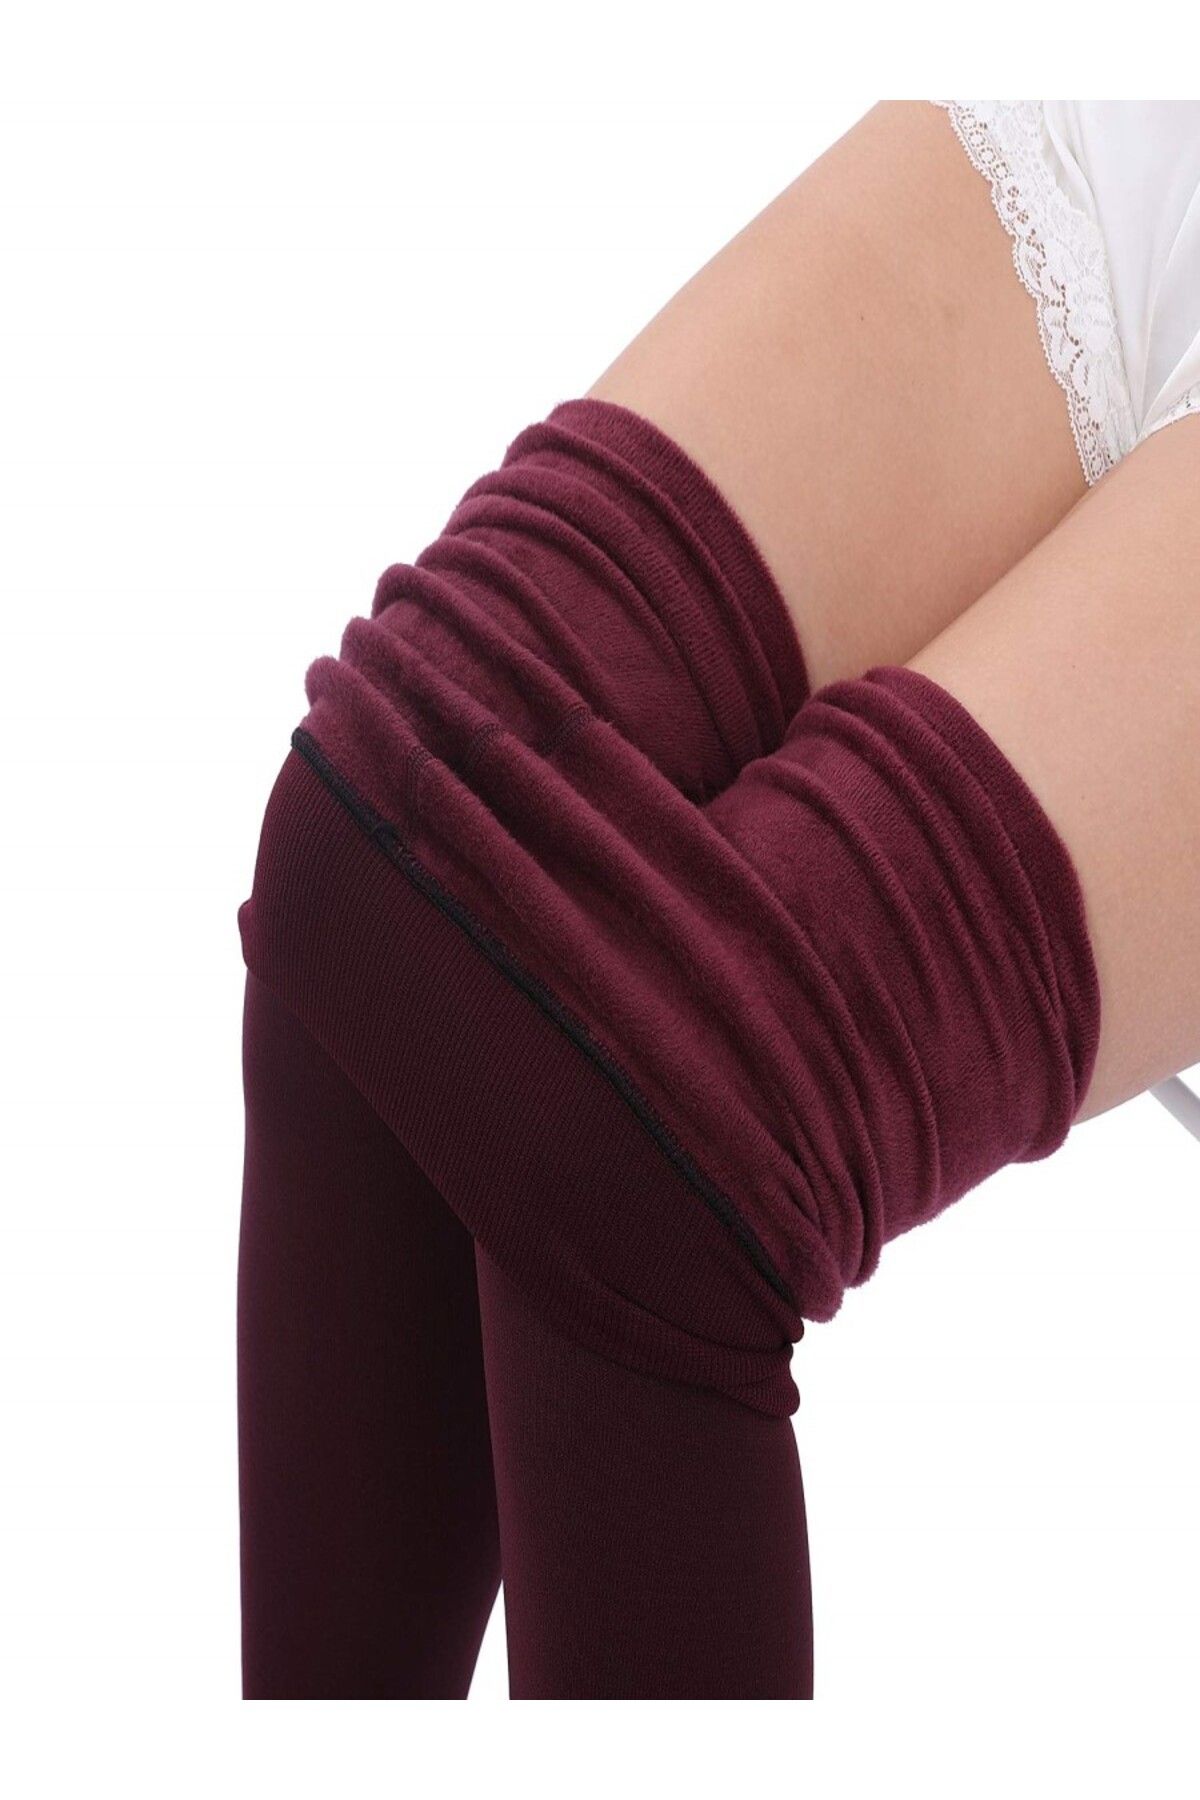 MİSTİRİK Ravena Model Örme Sıcak Tutan Ve Sıkıalaştıran Termal Külotlu Çorap Bordo Renk